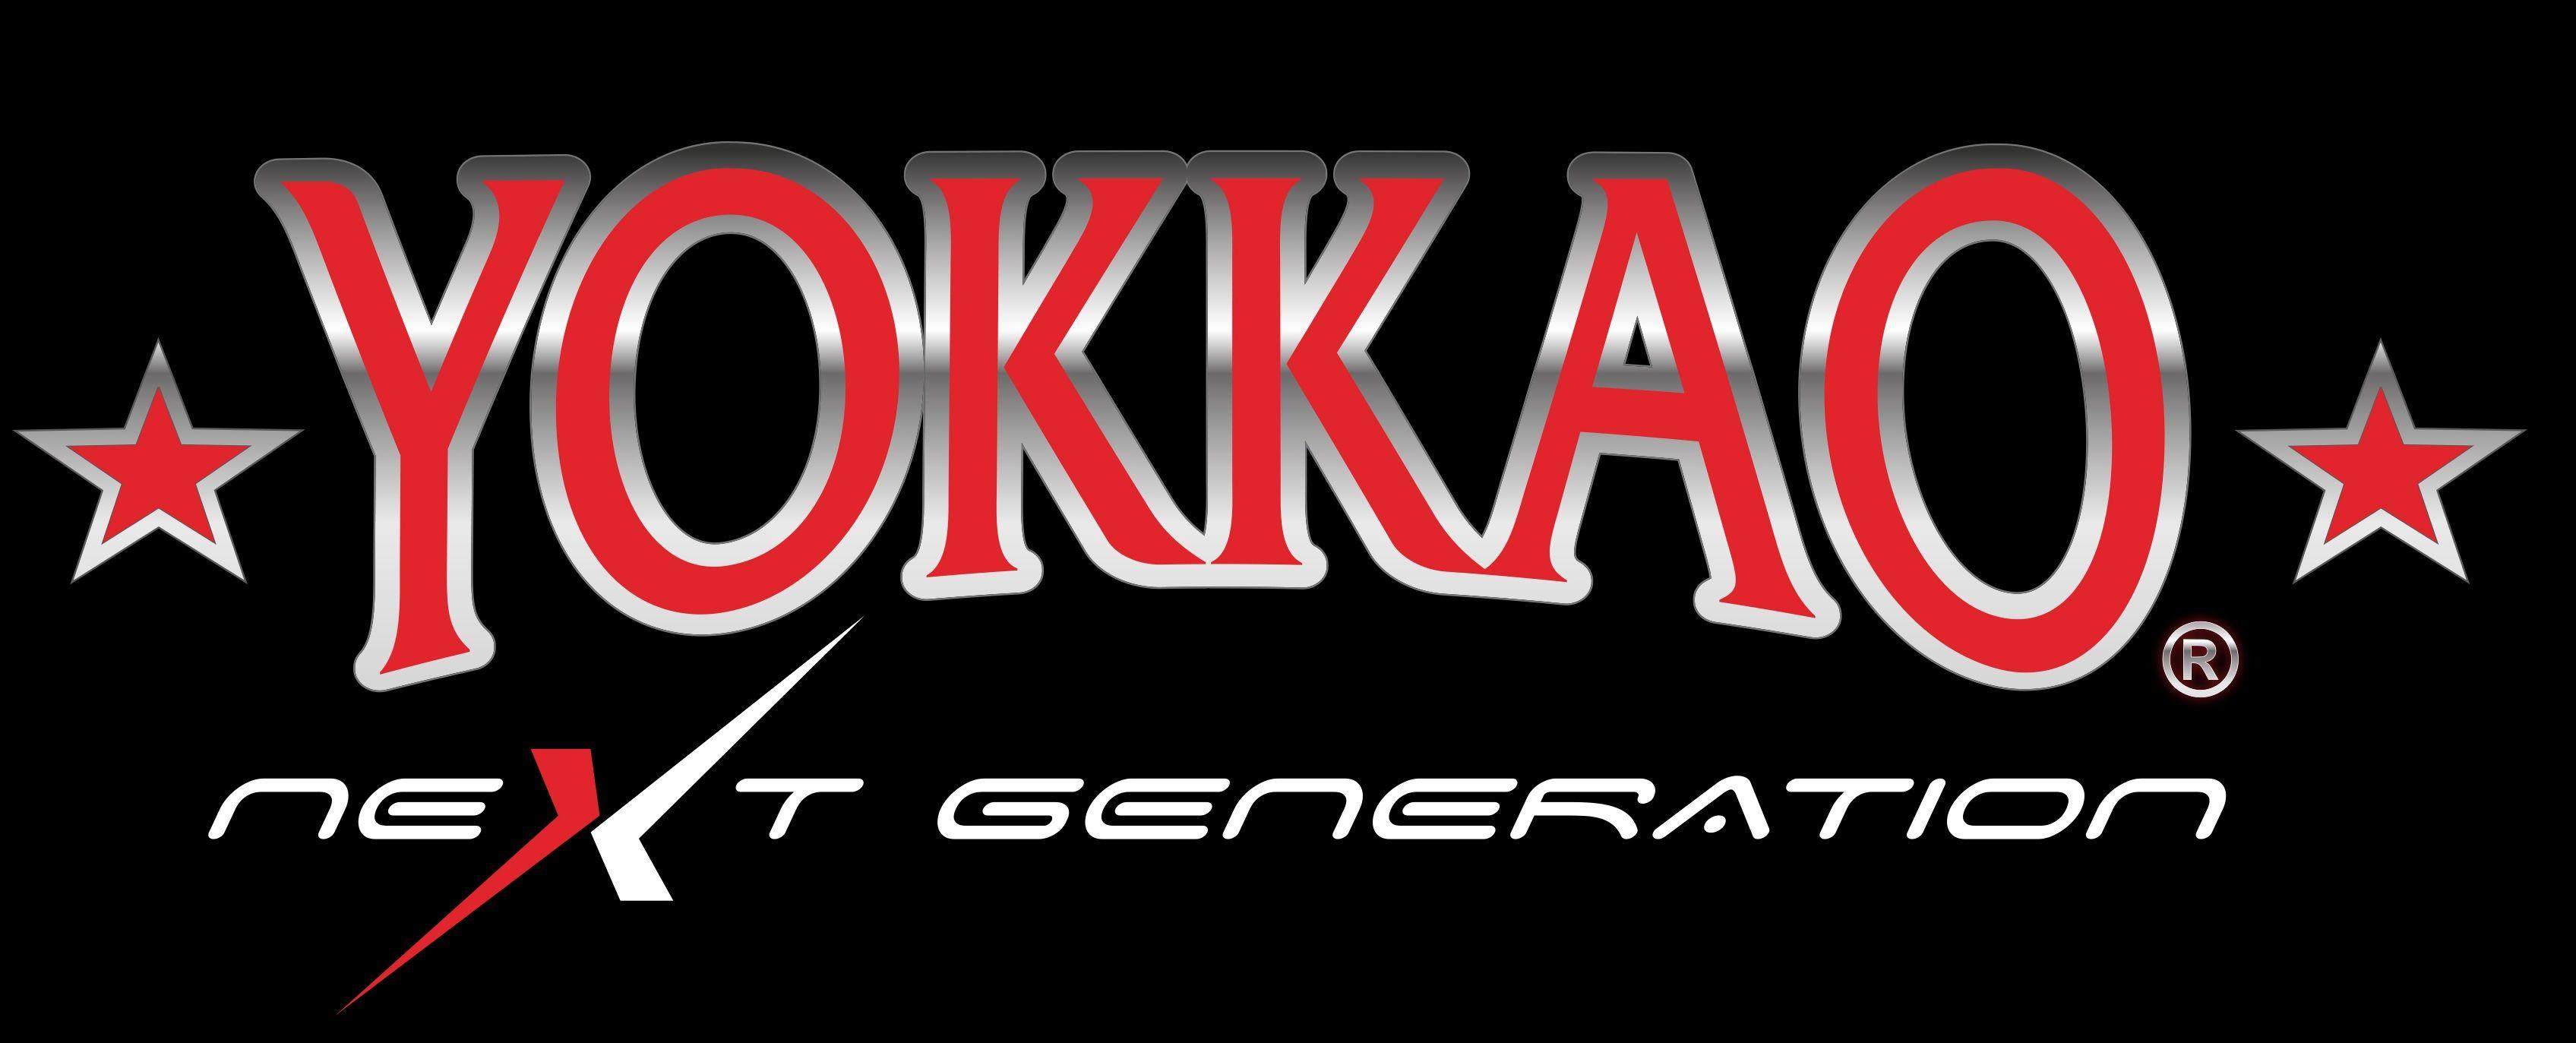 YOKKAO Next Generation: Amy Pirnie Signs with YOKKAO!